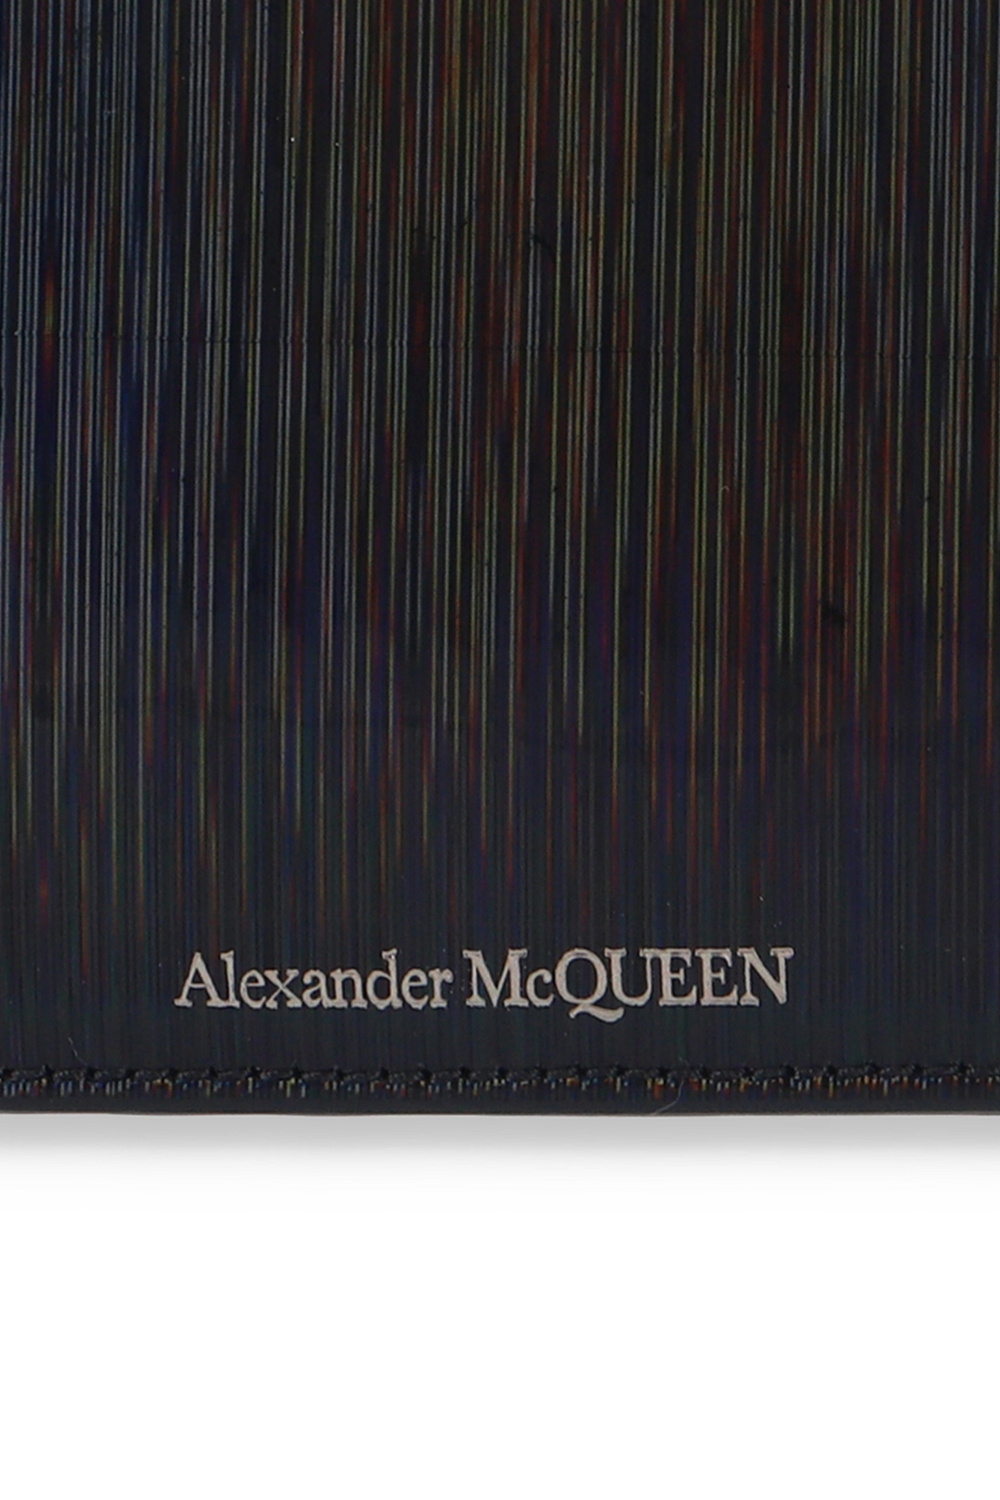 Alexander McQueen alexander mcqueen red satchel